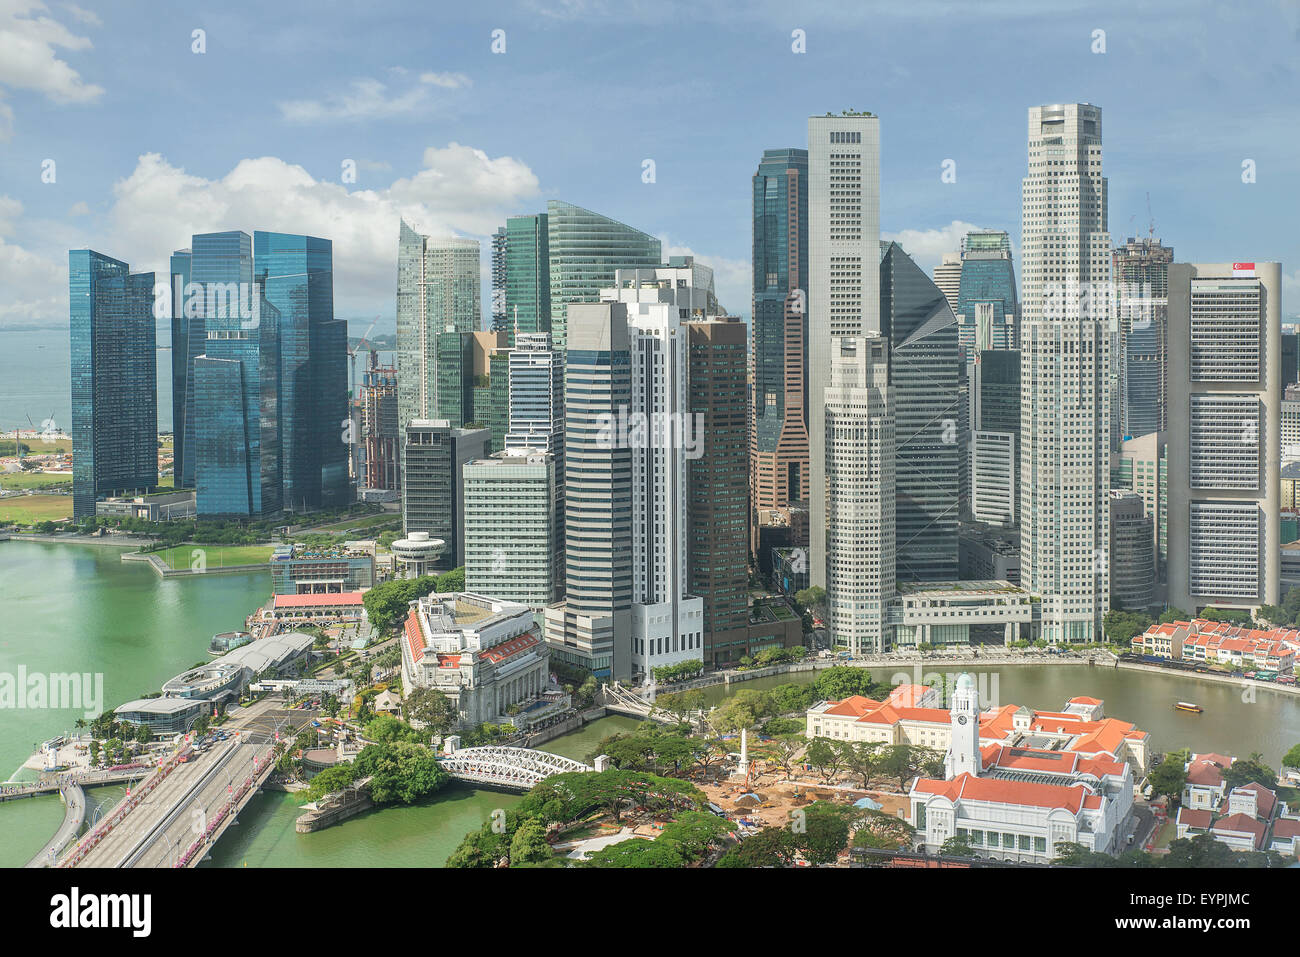 Singapore Skyline. Singapore`s business district. Stock Photo